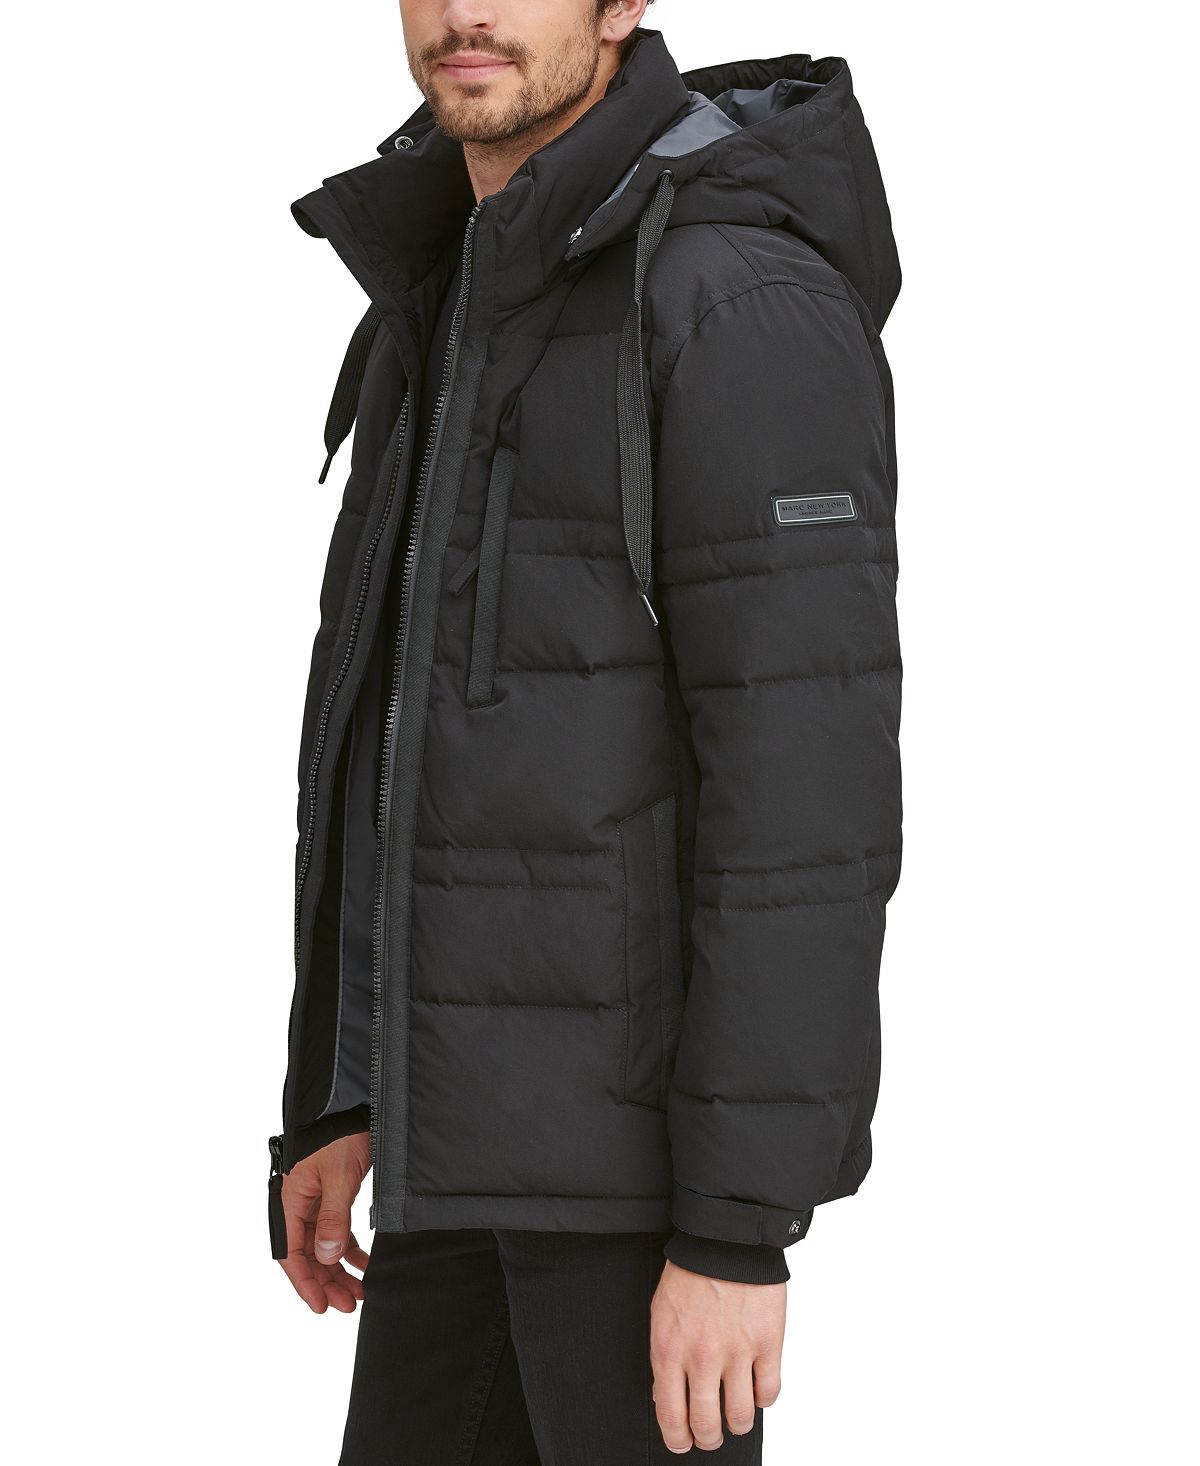 Мужская мятая пуховая куртка huxley со съемным капюшоном Marc New York, черный цена и фото